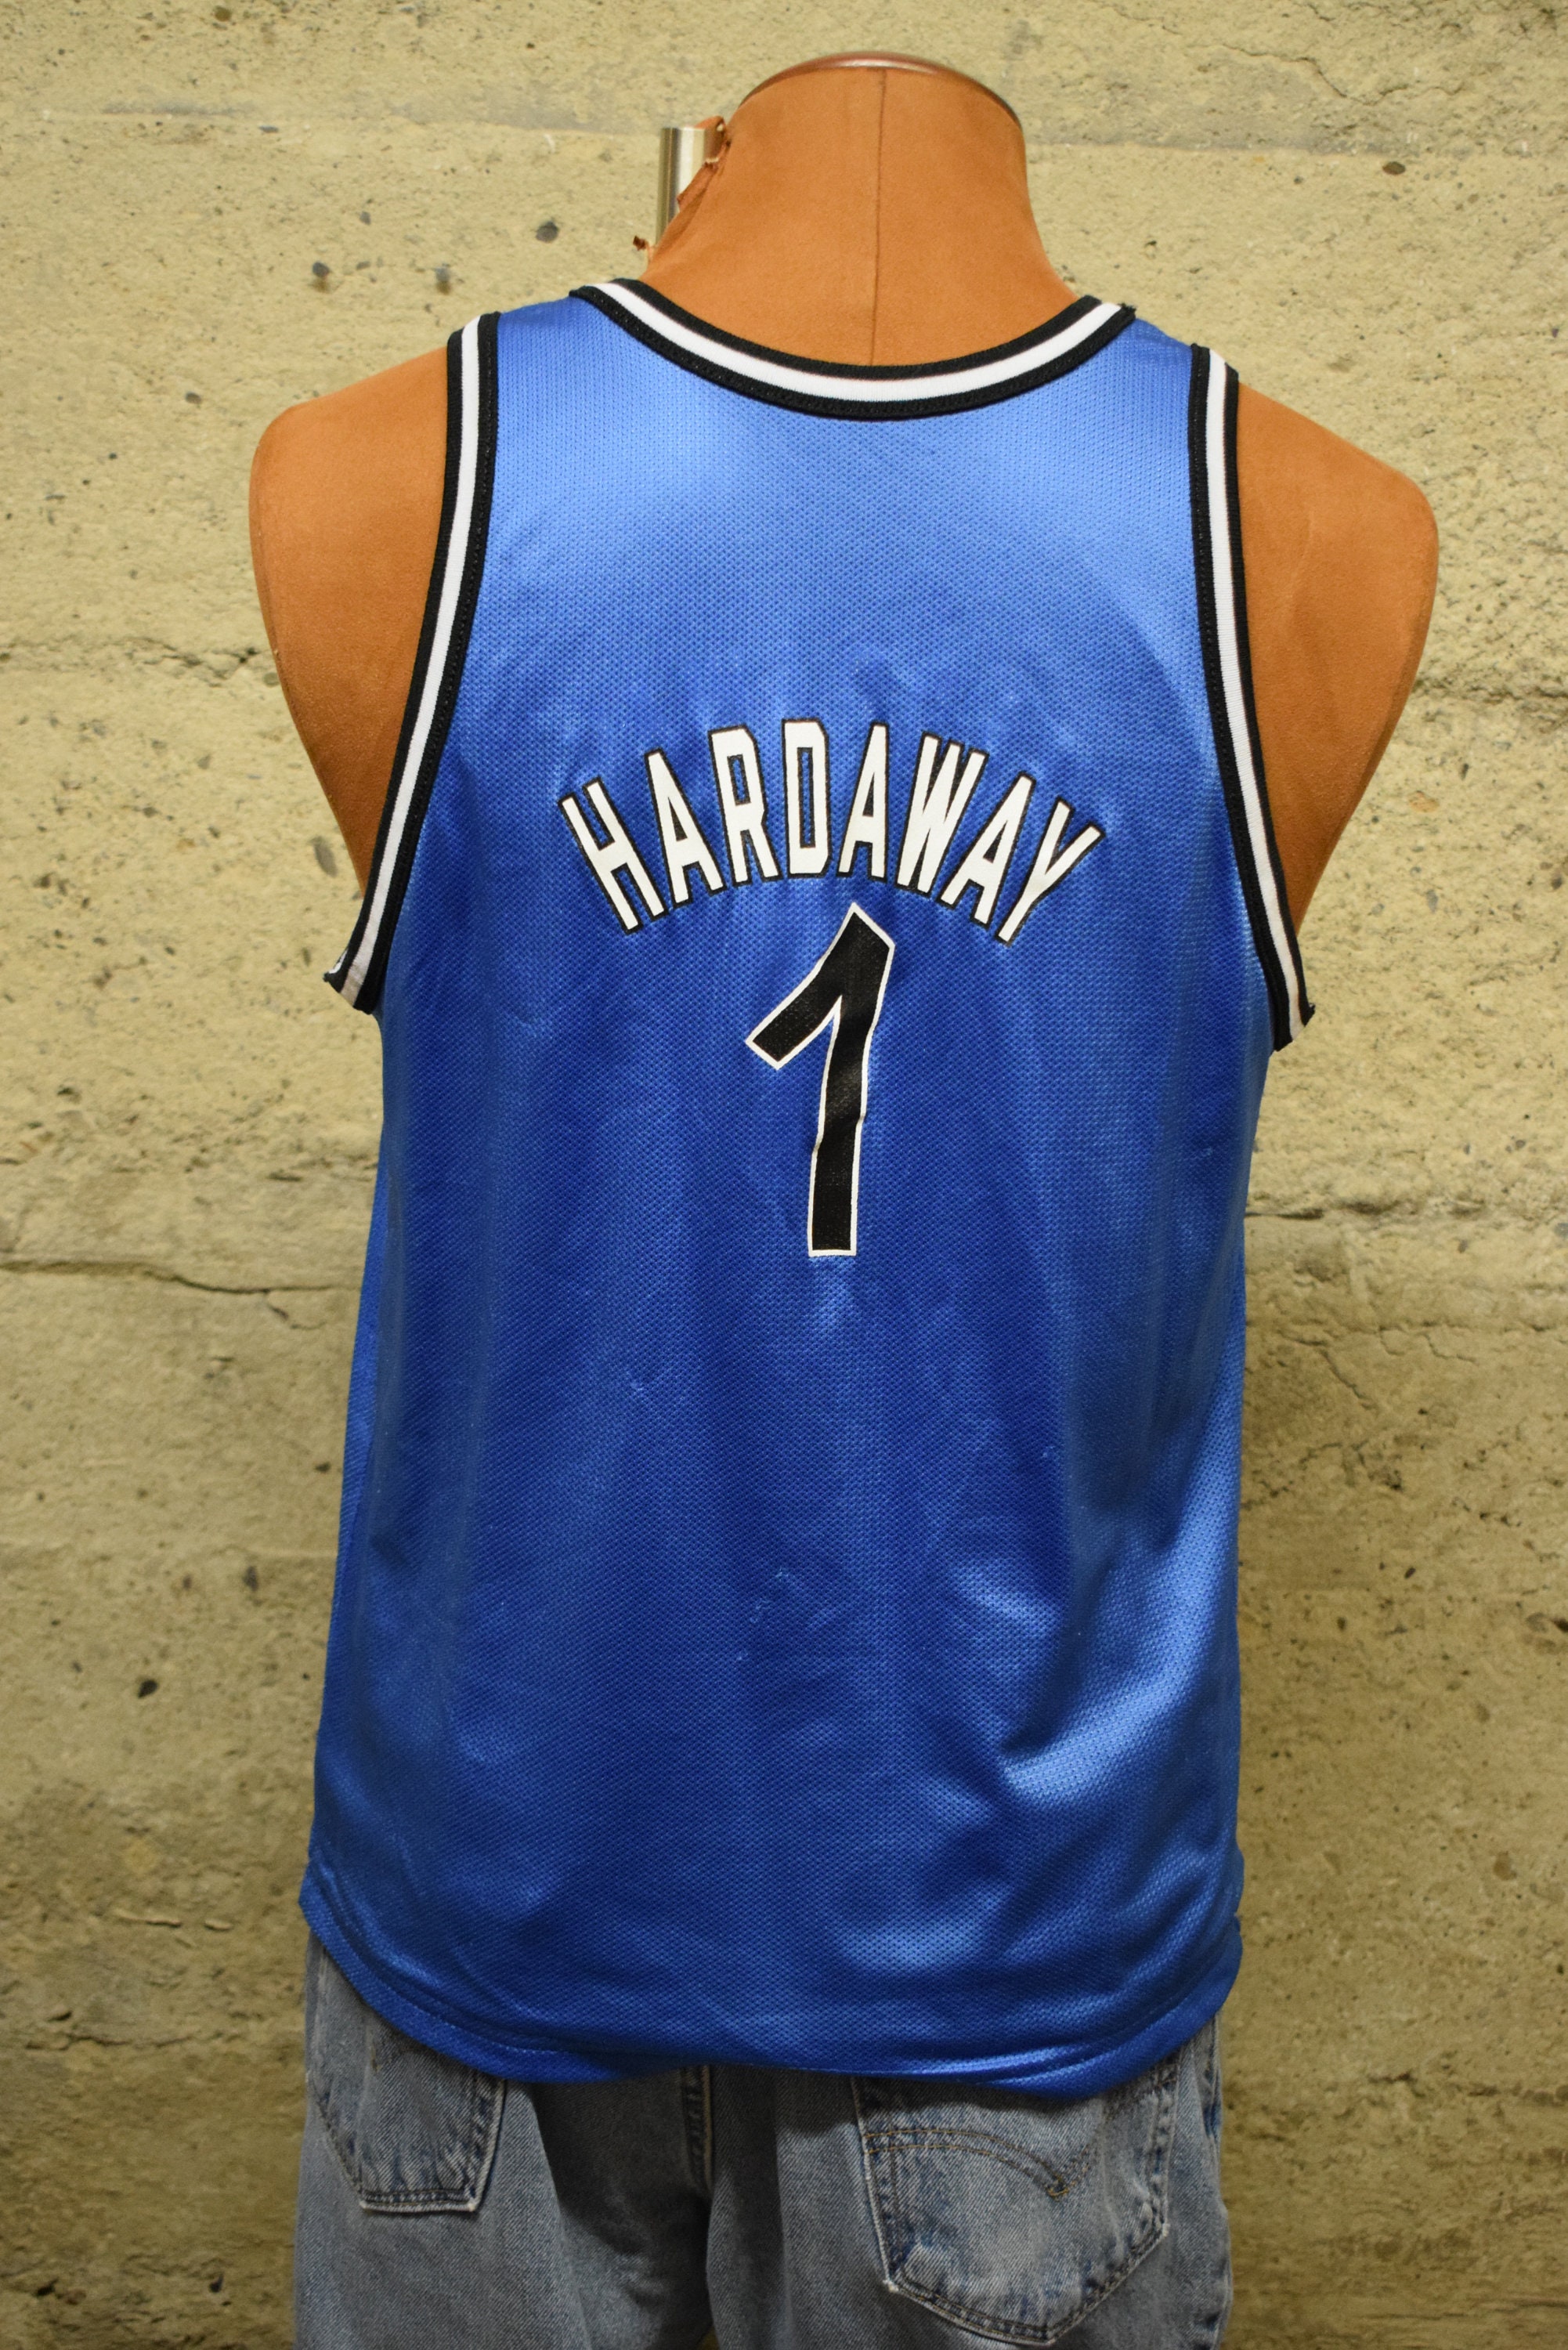 Headgear Classics Penny Hardaway Treadwell HS Basketball Jersey